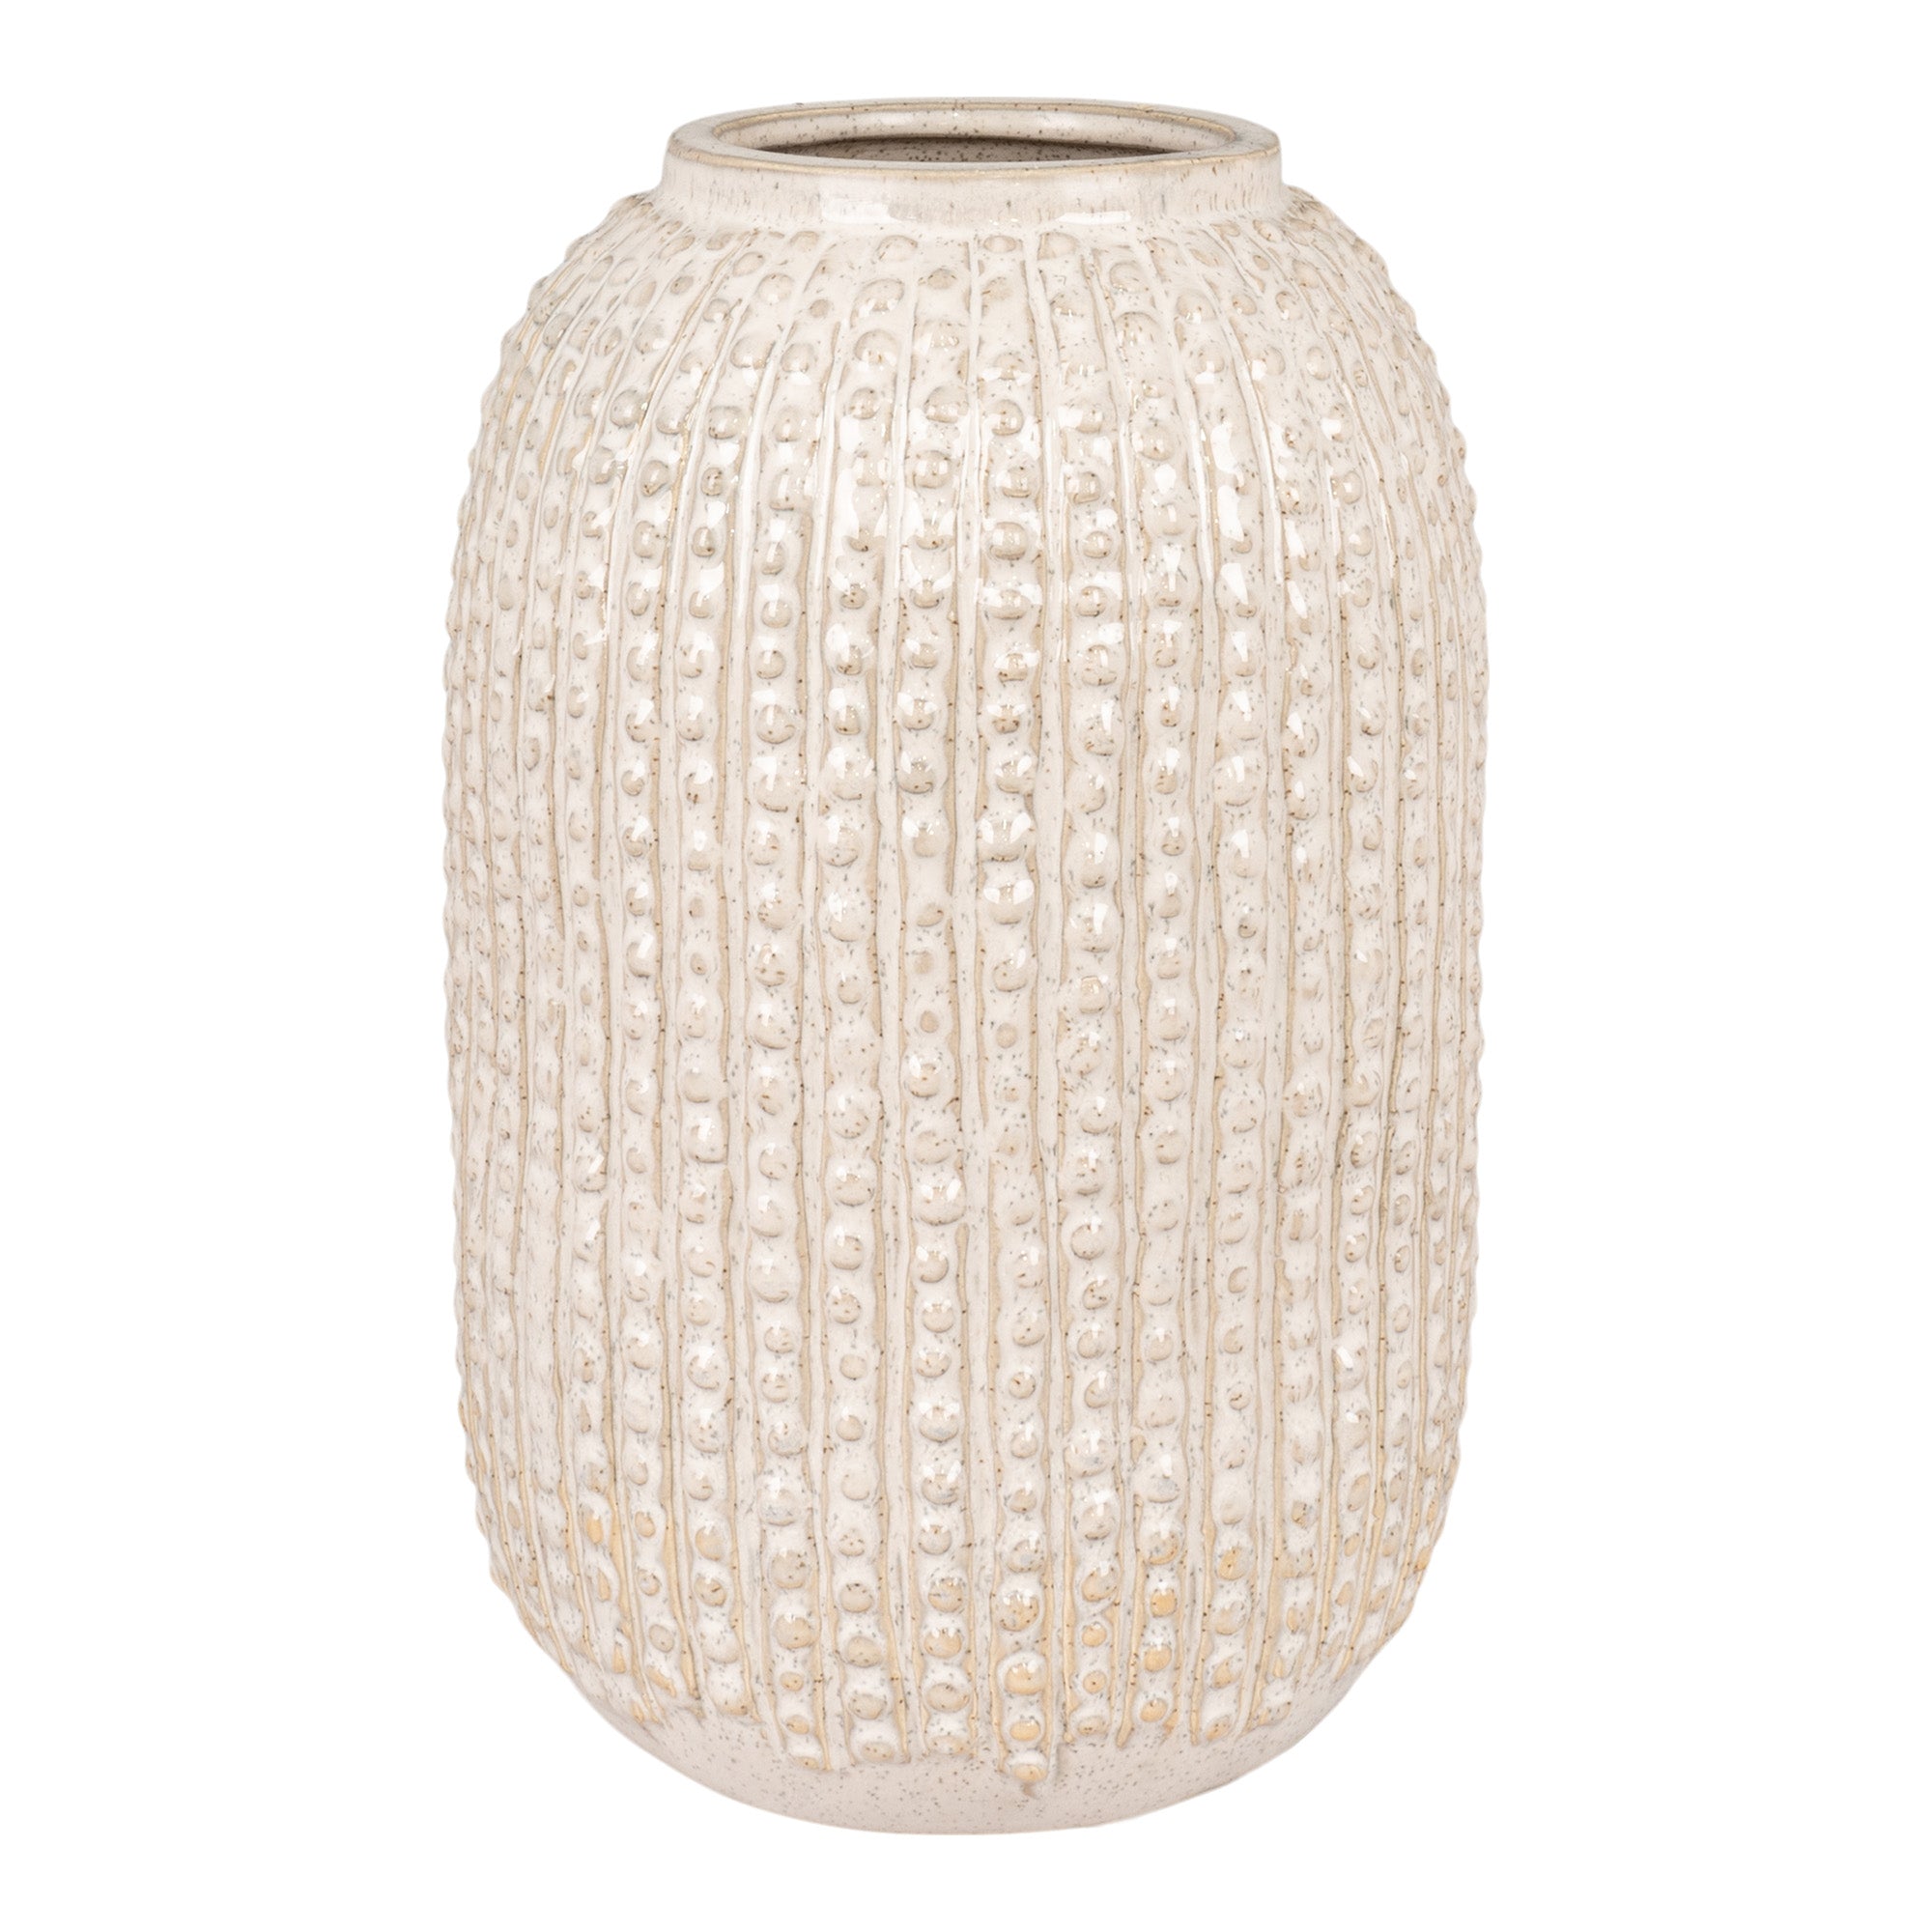 Vase - Vase I Keramik, Beige Med Mønster, Rund, Ø16X25,5 Cm ⎮ 5713917022090 ⎮ 4441751 